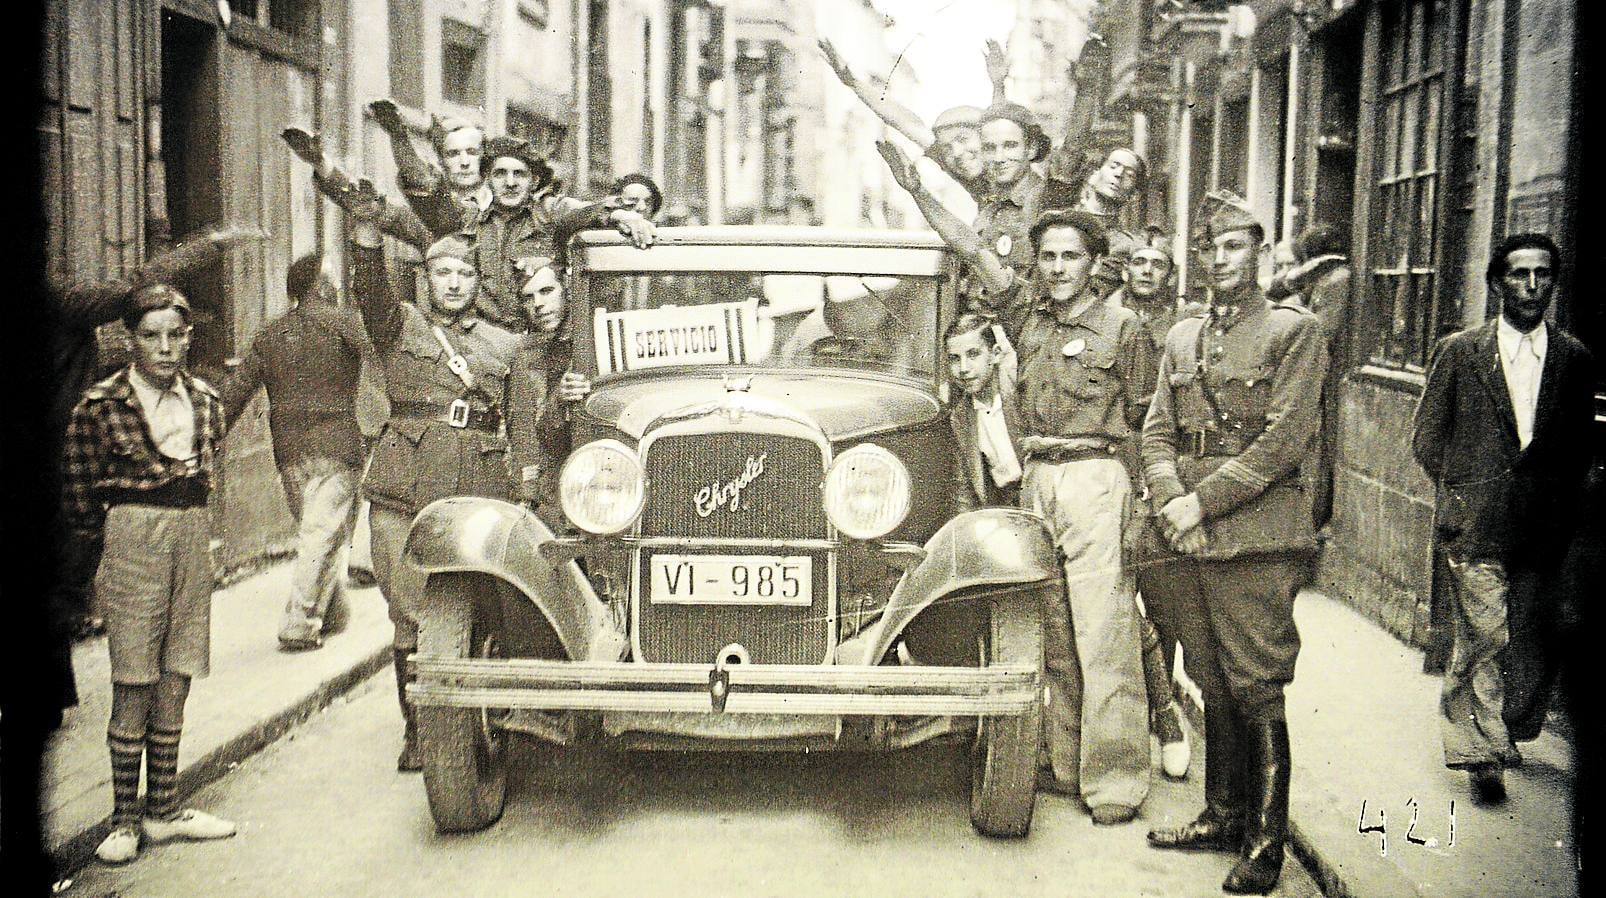 Una camioneta llena de soldados y requetés hacen el saludo fascista en una calle de Vitoria.